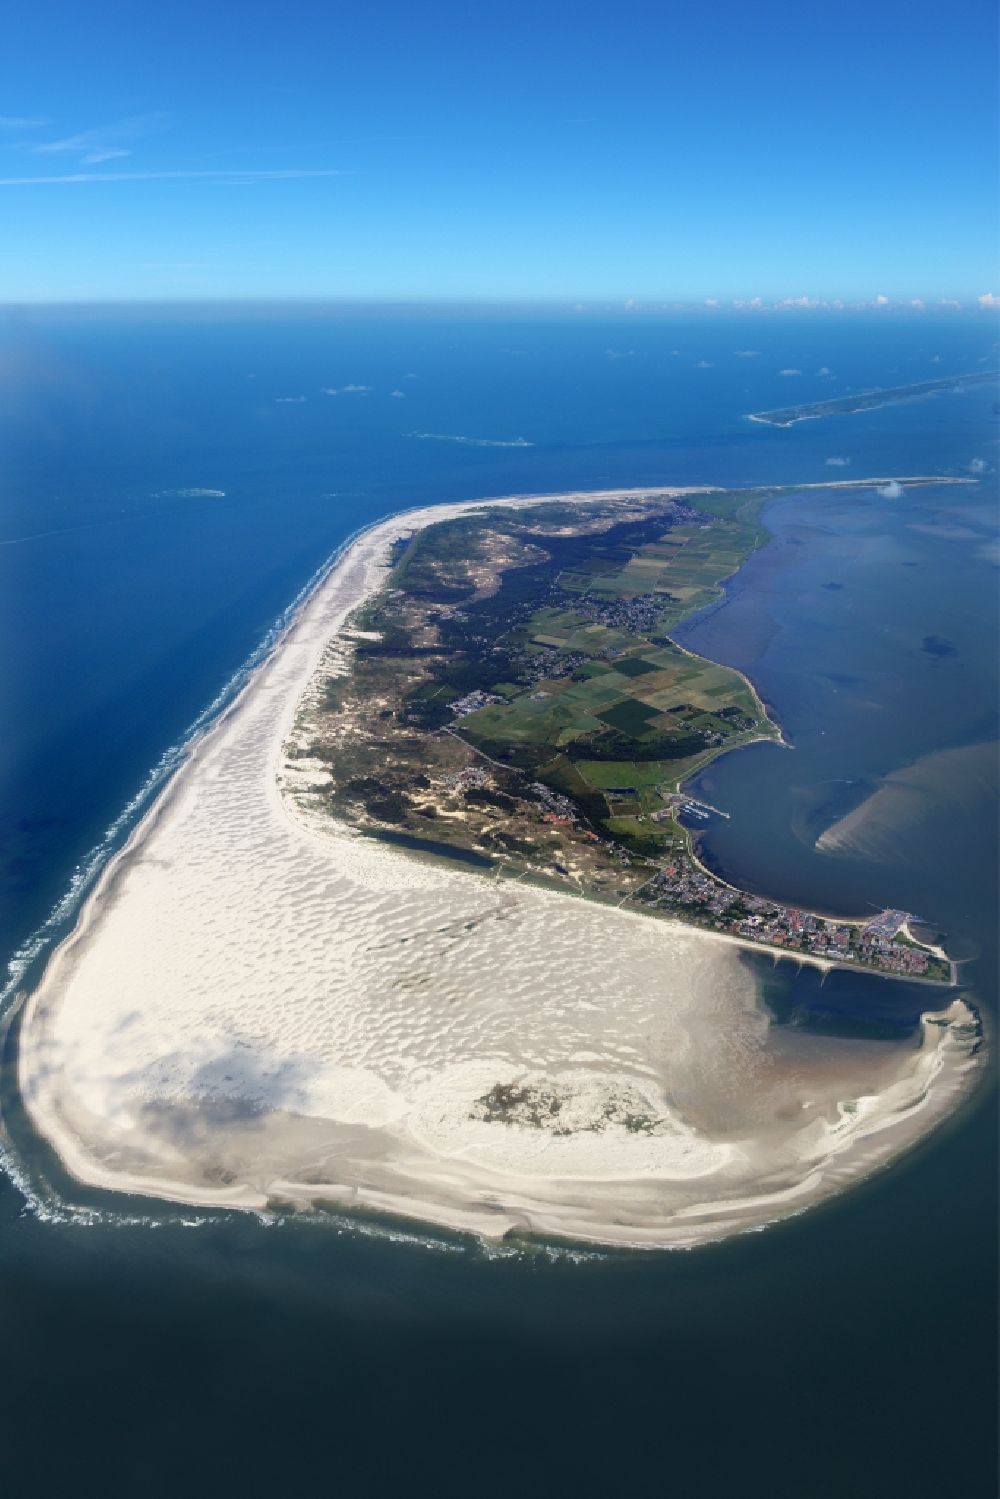 Wittdün auf Amrum aus der Vogelperspektive: Sandstrand- Landschaft an der Nordsee in Wittdün auf Amrum im Bundesland Schleswig-Holstein